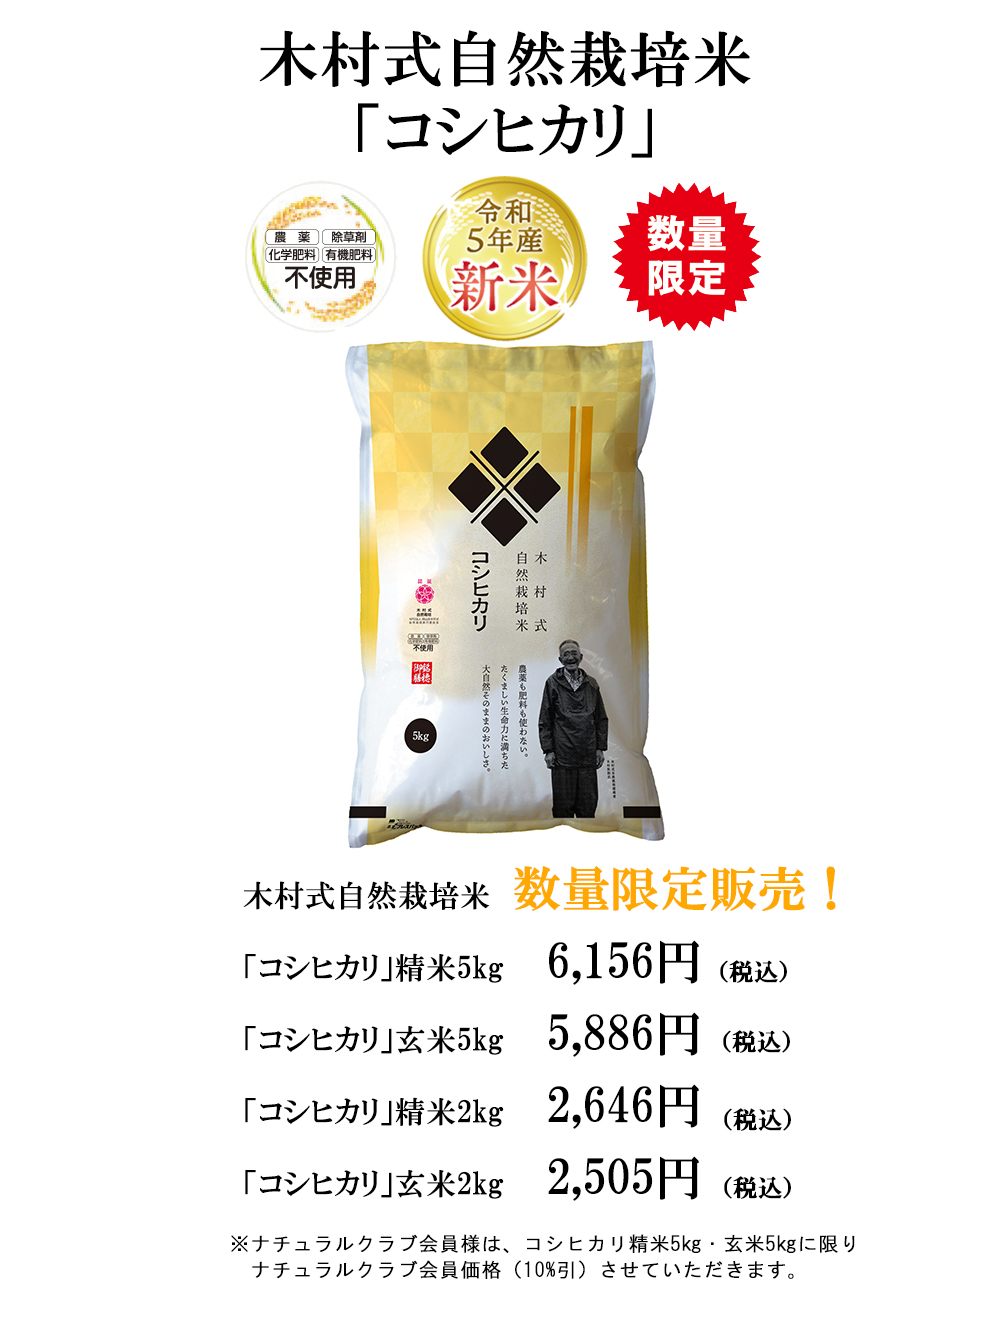 ★数量限定★木村式自然栽培米『コシヒカリ』